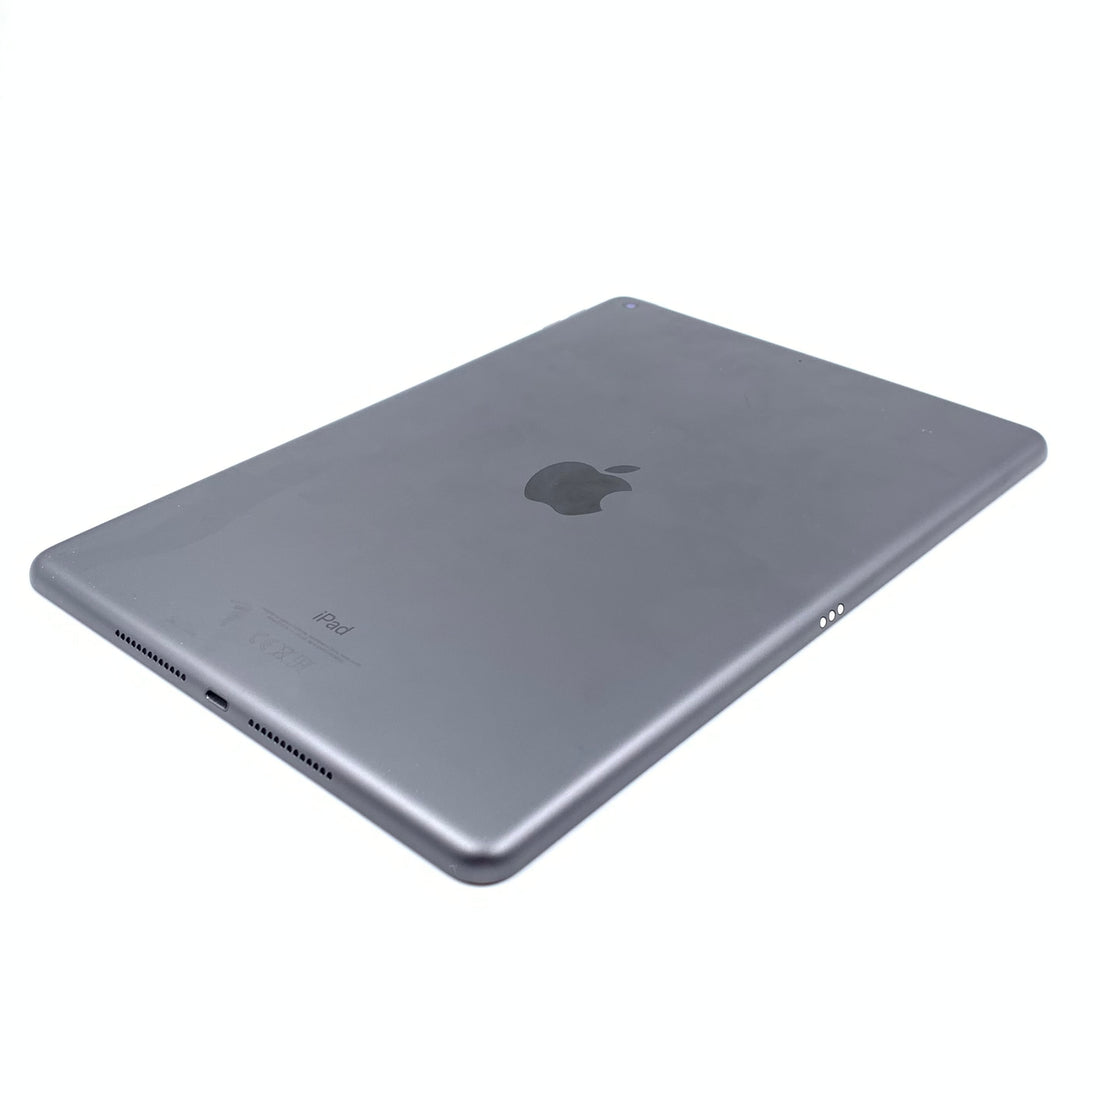 Apple iPad 7 A2197 128GB (Reacondicionado)